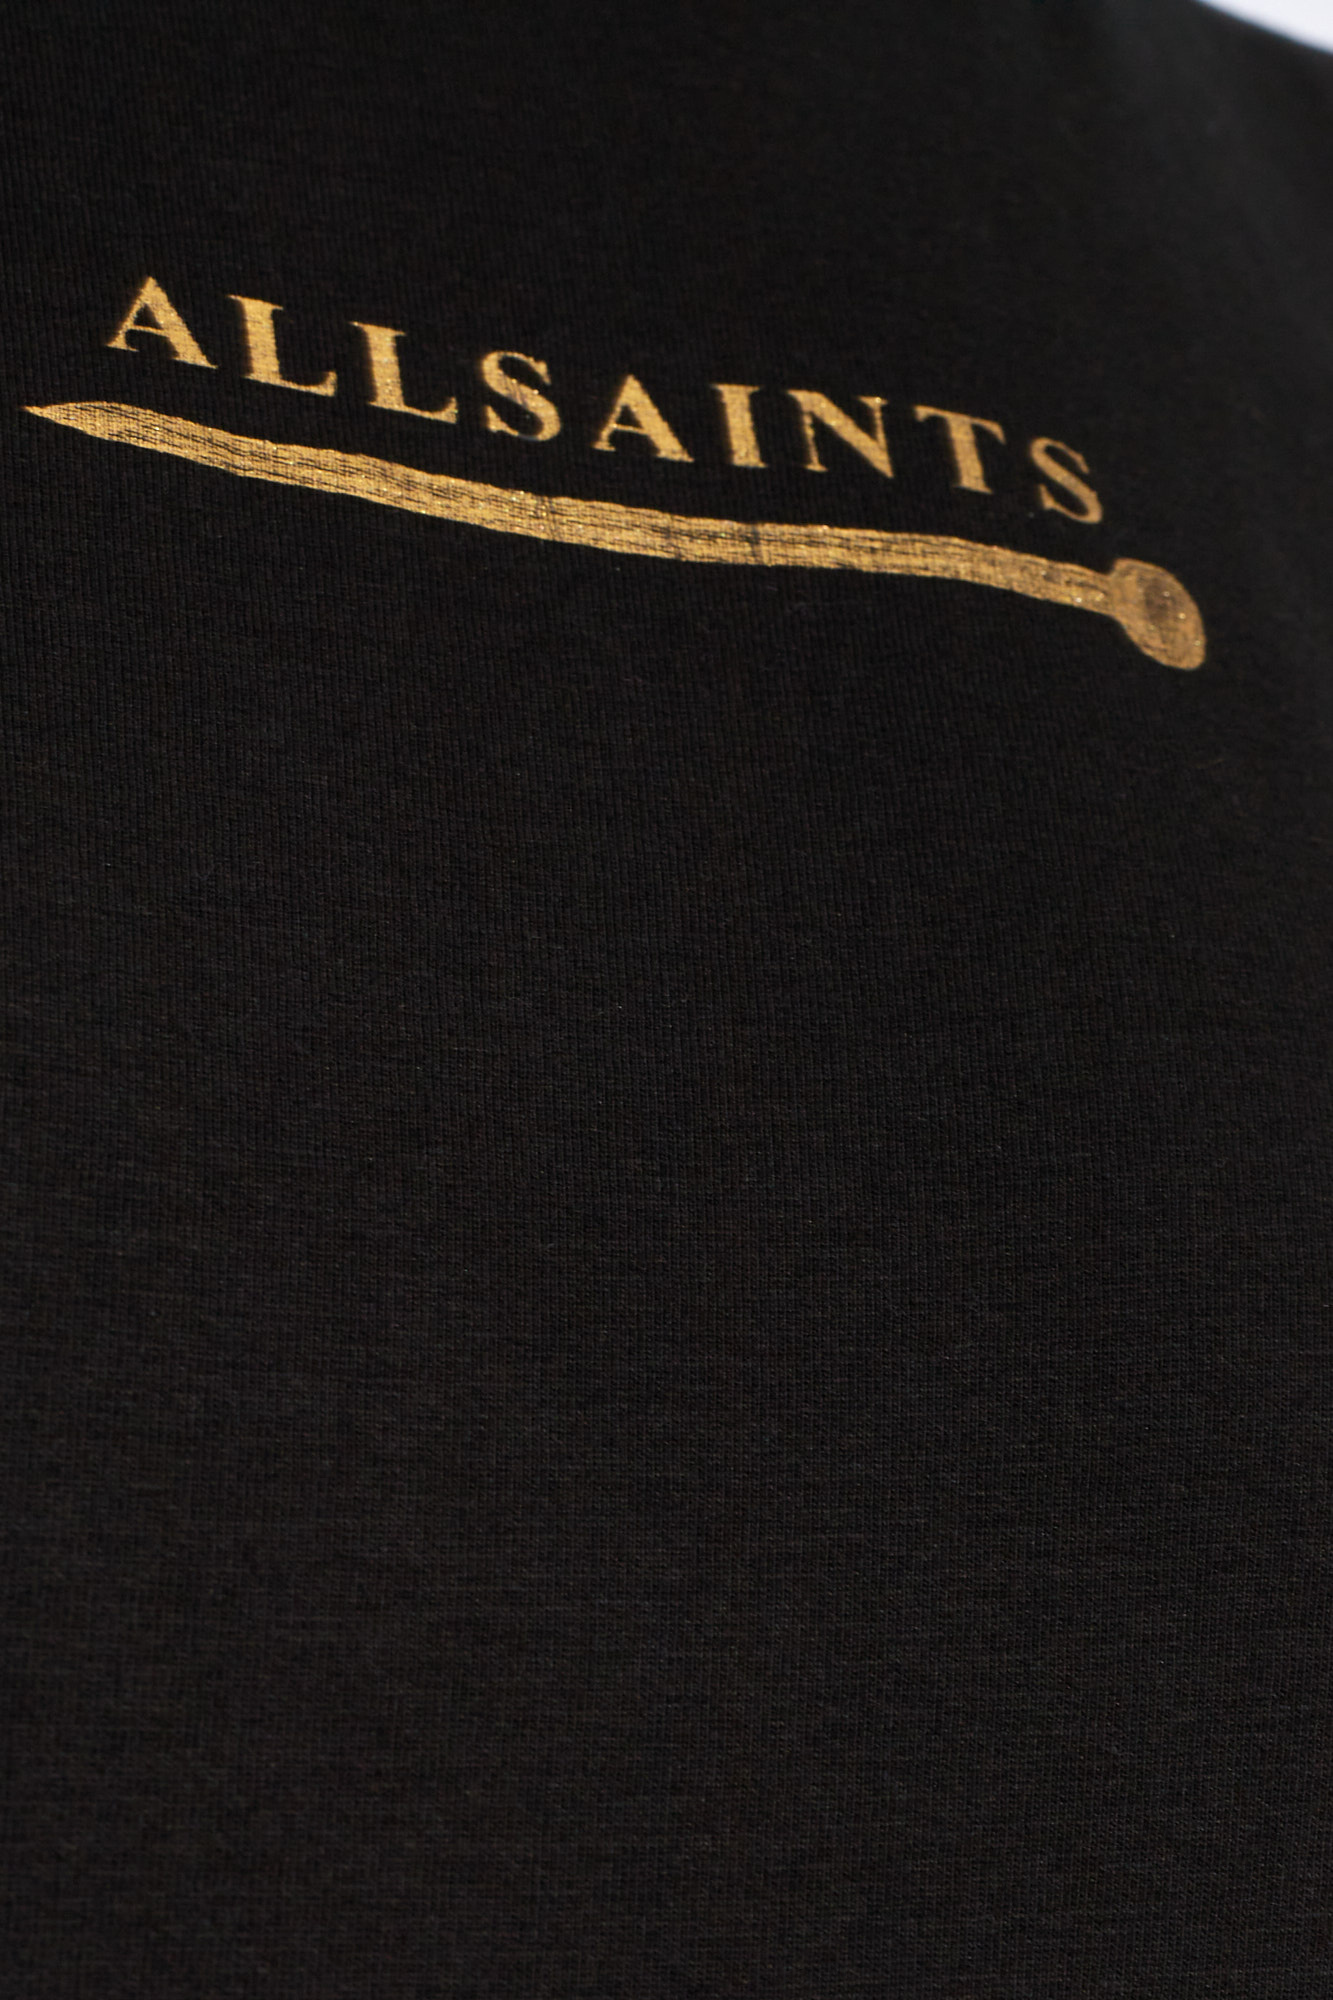 AllSaints ‘Perta’ T-shirt